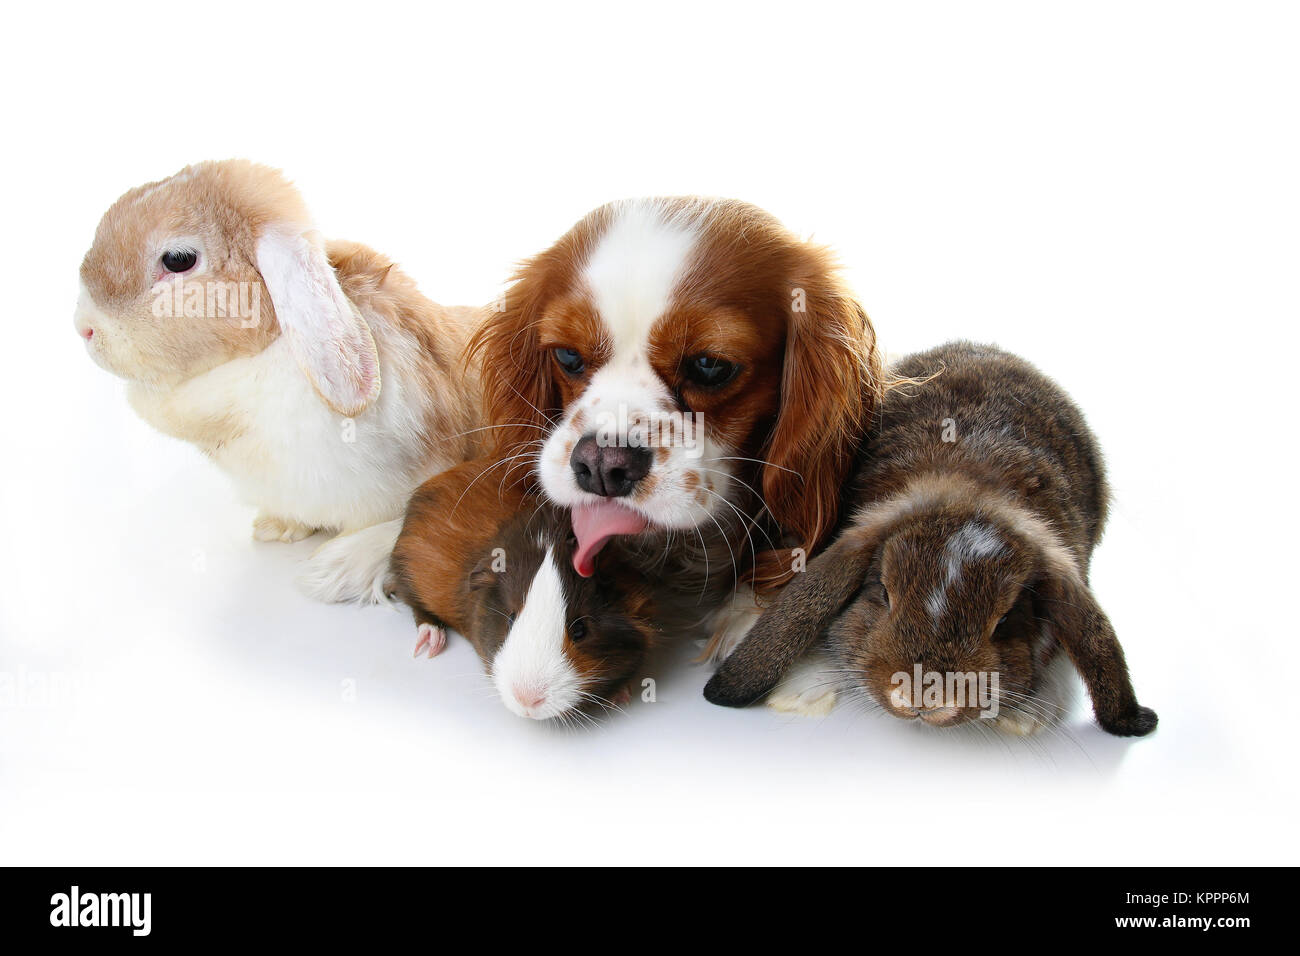 Tierischen Freunden. Wahre pet-Freunde. Hund Kaninchen bunny lop Tiere zusammen auf weißem studio Hintergrund isoliert. Haustiere lieben einander. Stockfoto